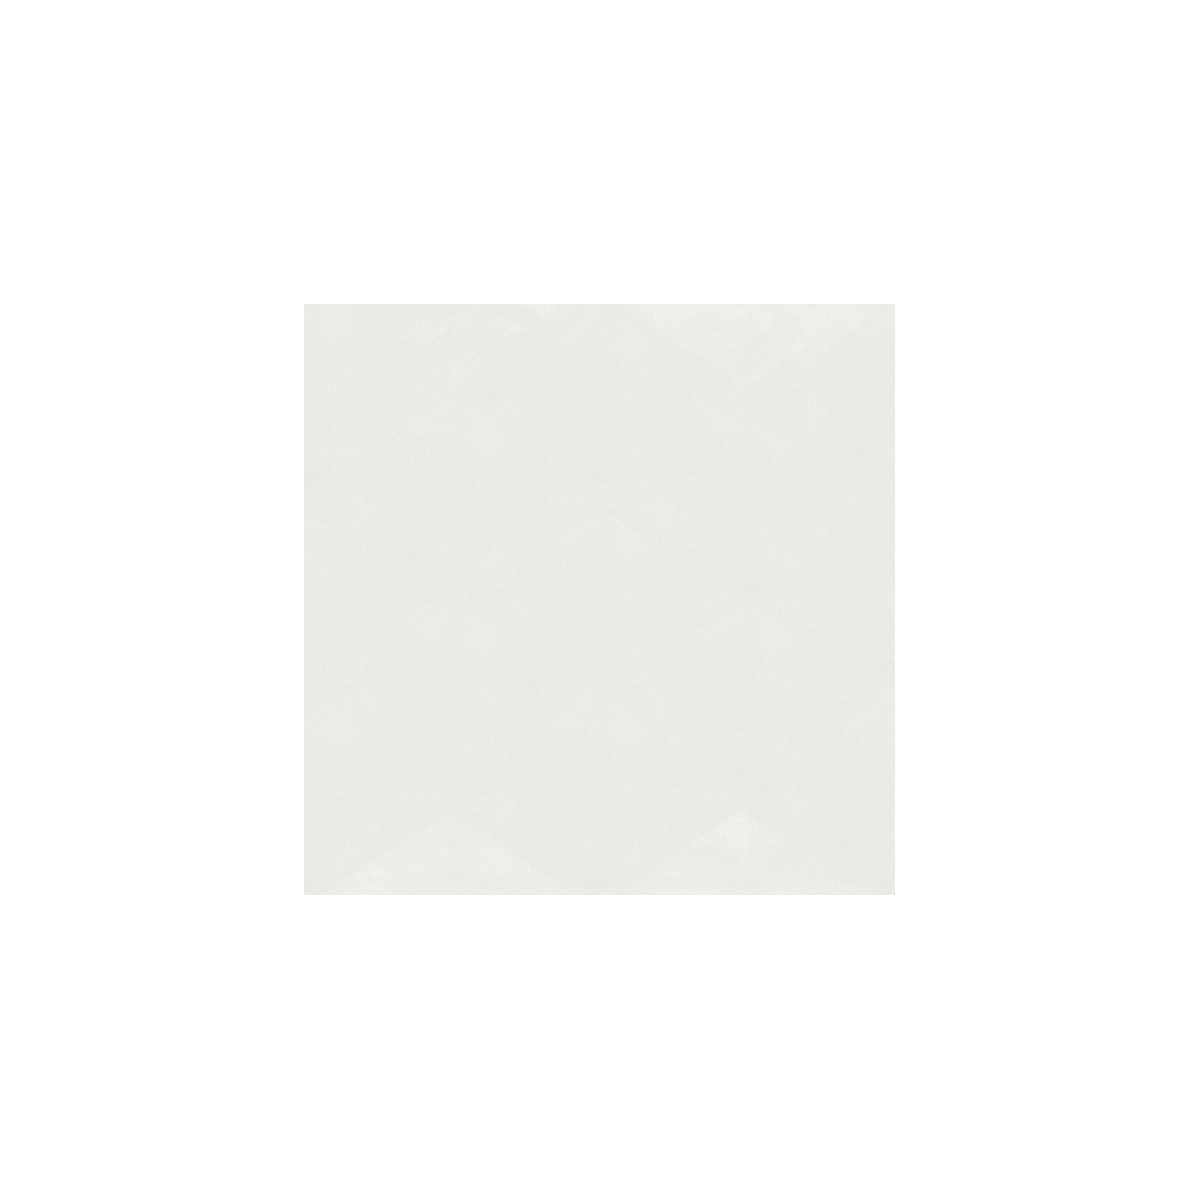 Base Fiore Pearl 15x15 (caja 0,5 m2) - Serie Fiorella - Marca APE